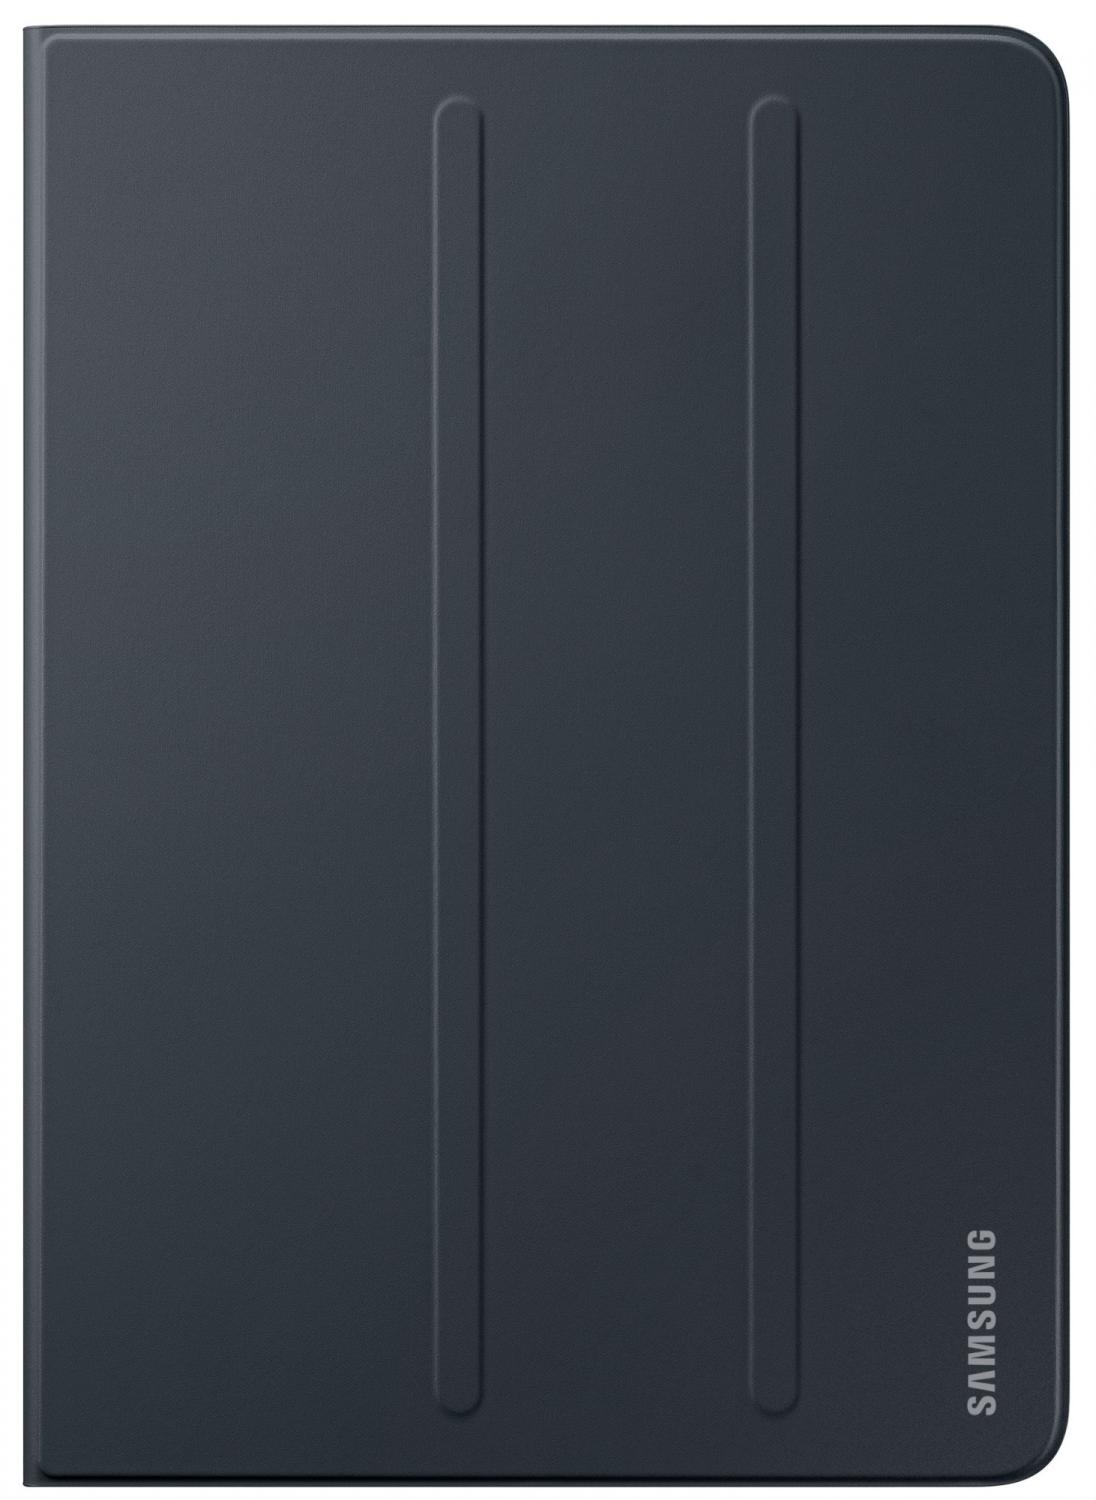 Чехол-книжка Samsung EF-BT820 для Samsung Galaxy Tab S3 9.7 Черный